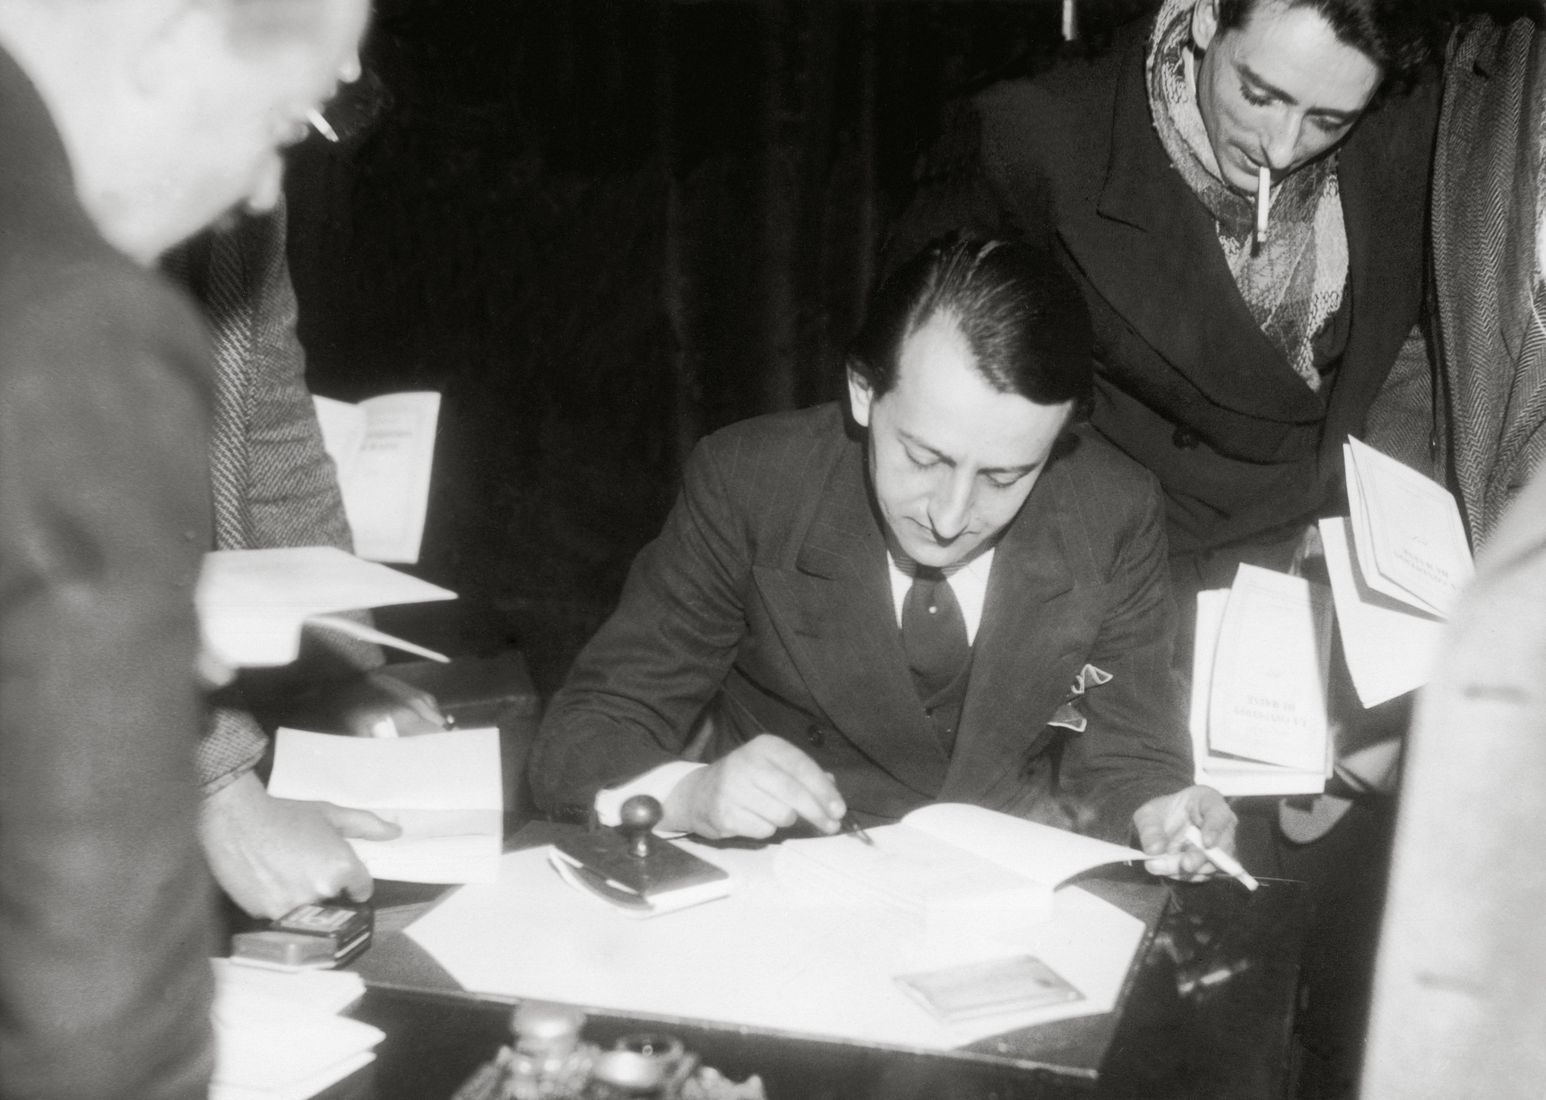 André Malraux dédicaçant son livre "La Condition humaine" après avoir reçu le prix Goncourt